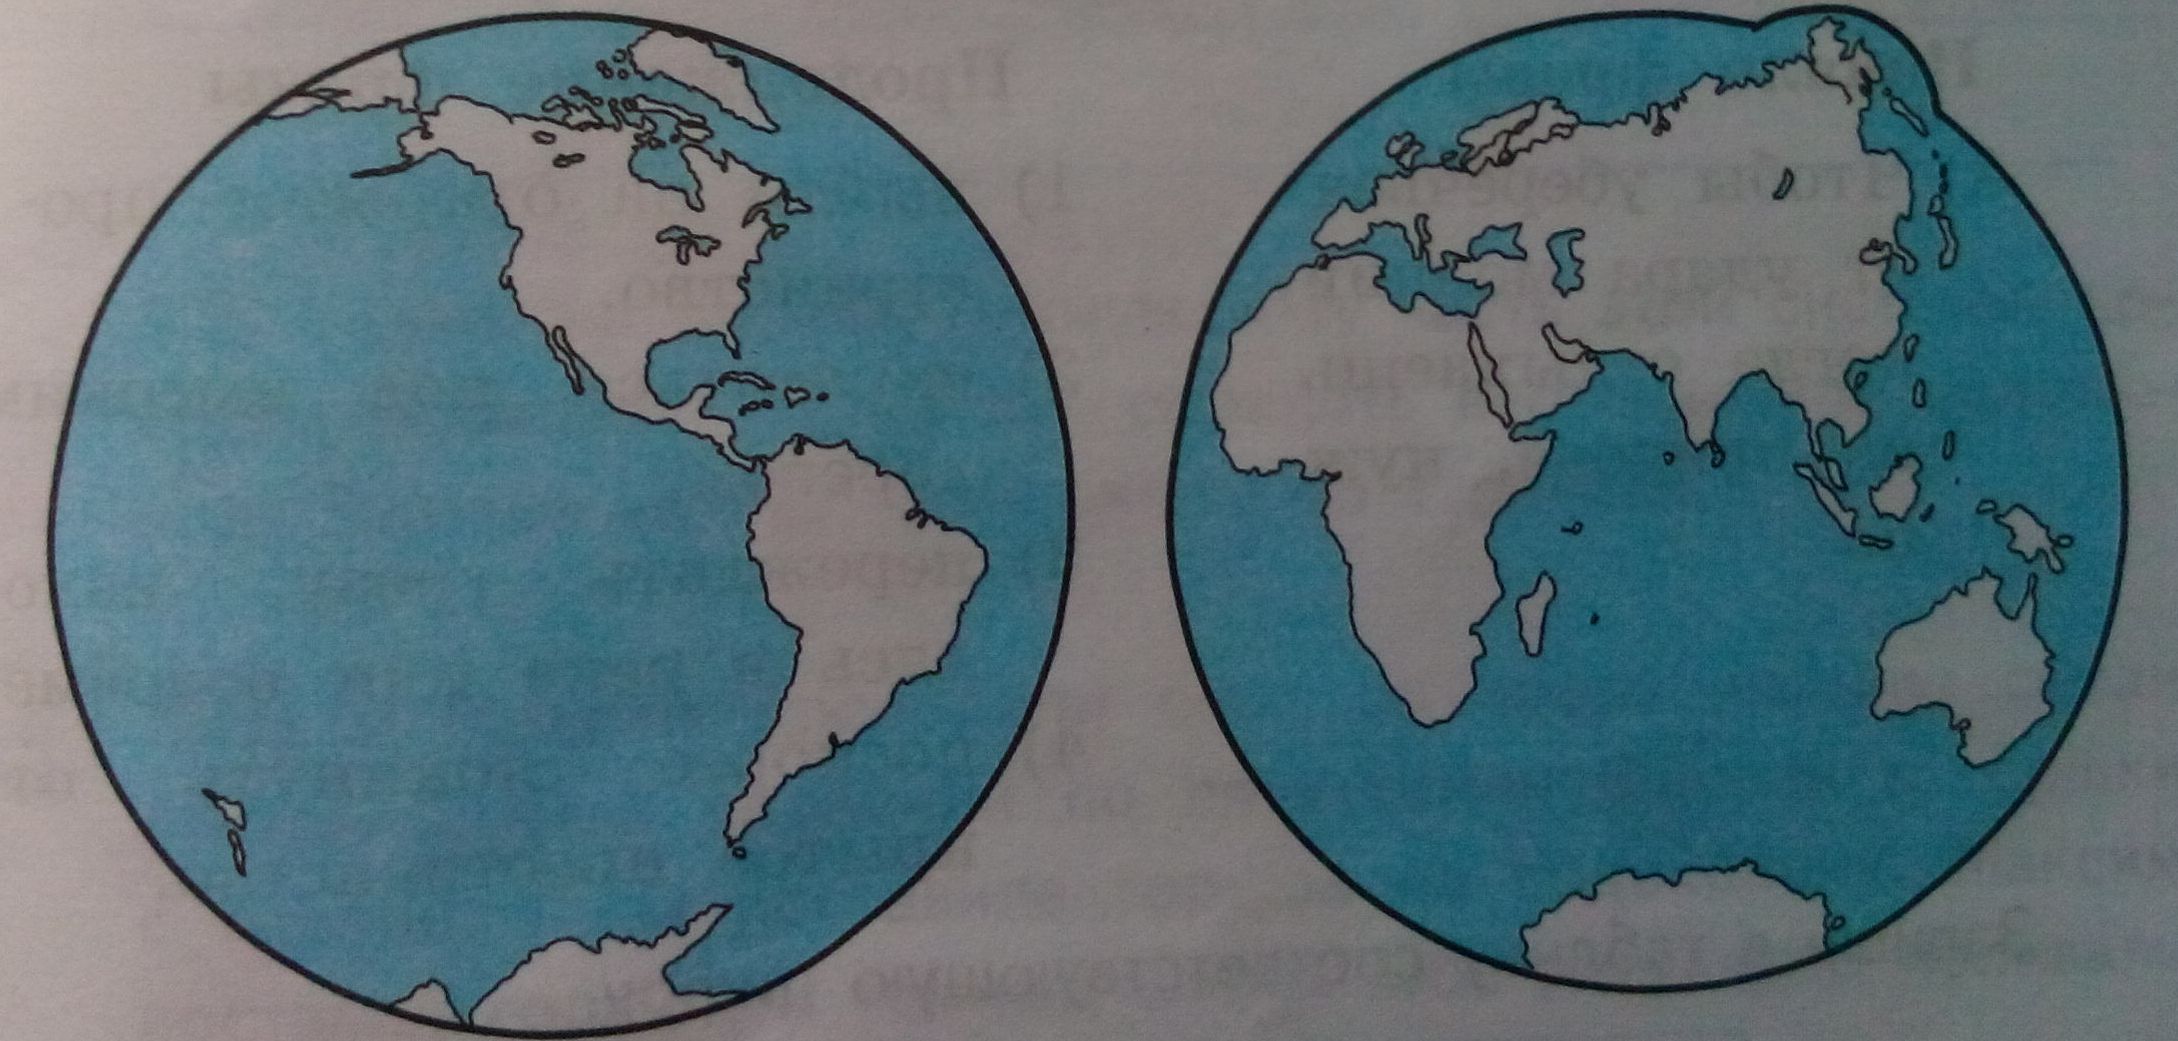 Материки на карте. Нарисовать Южные материки. Какой океан отмечен на рисунке знаком вопроса. Мир глазами географа. Карта материков южного полушария